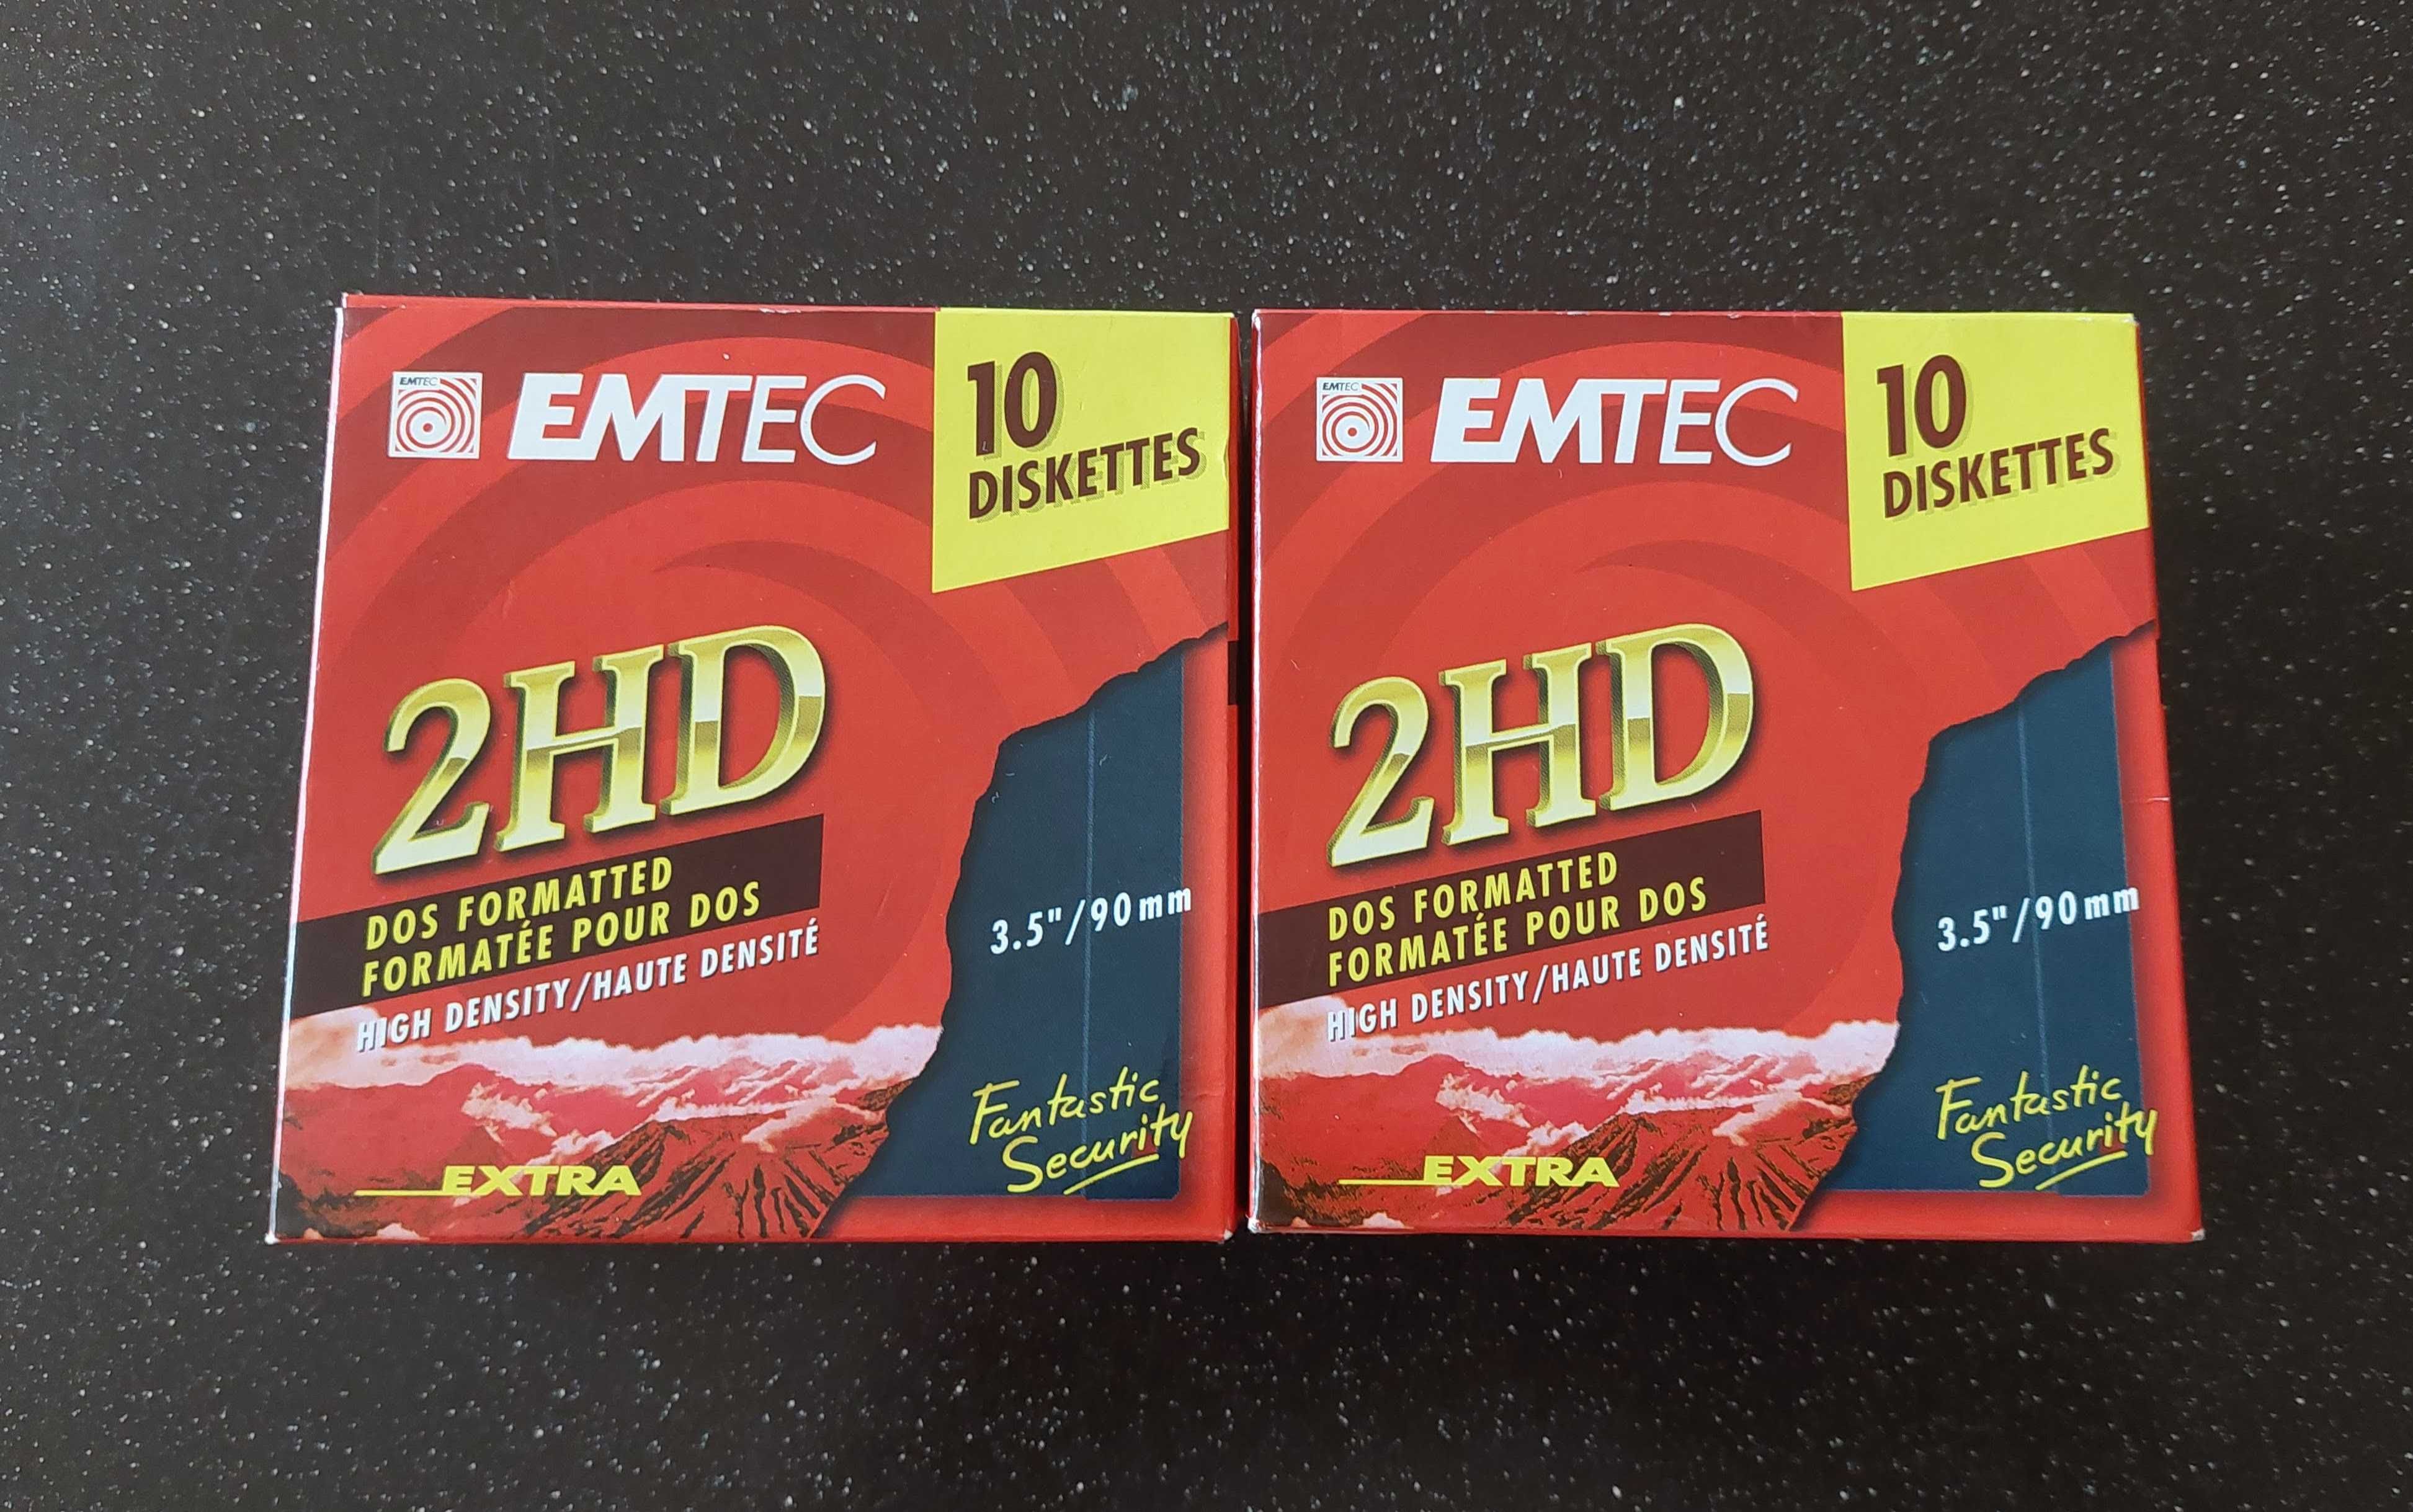 НОВИ! Дискети Floppy disc Emtec 2HD - 9 дискети в опаковка